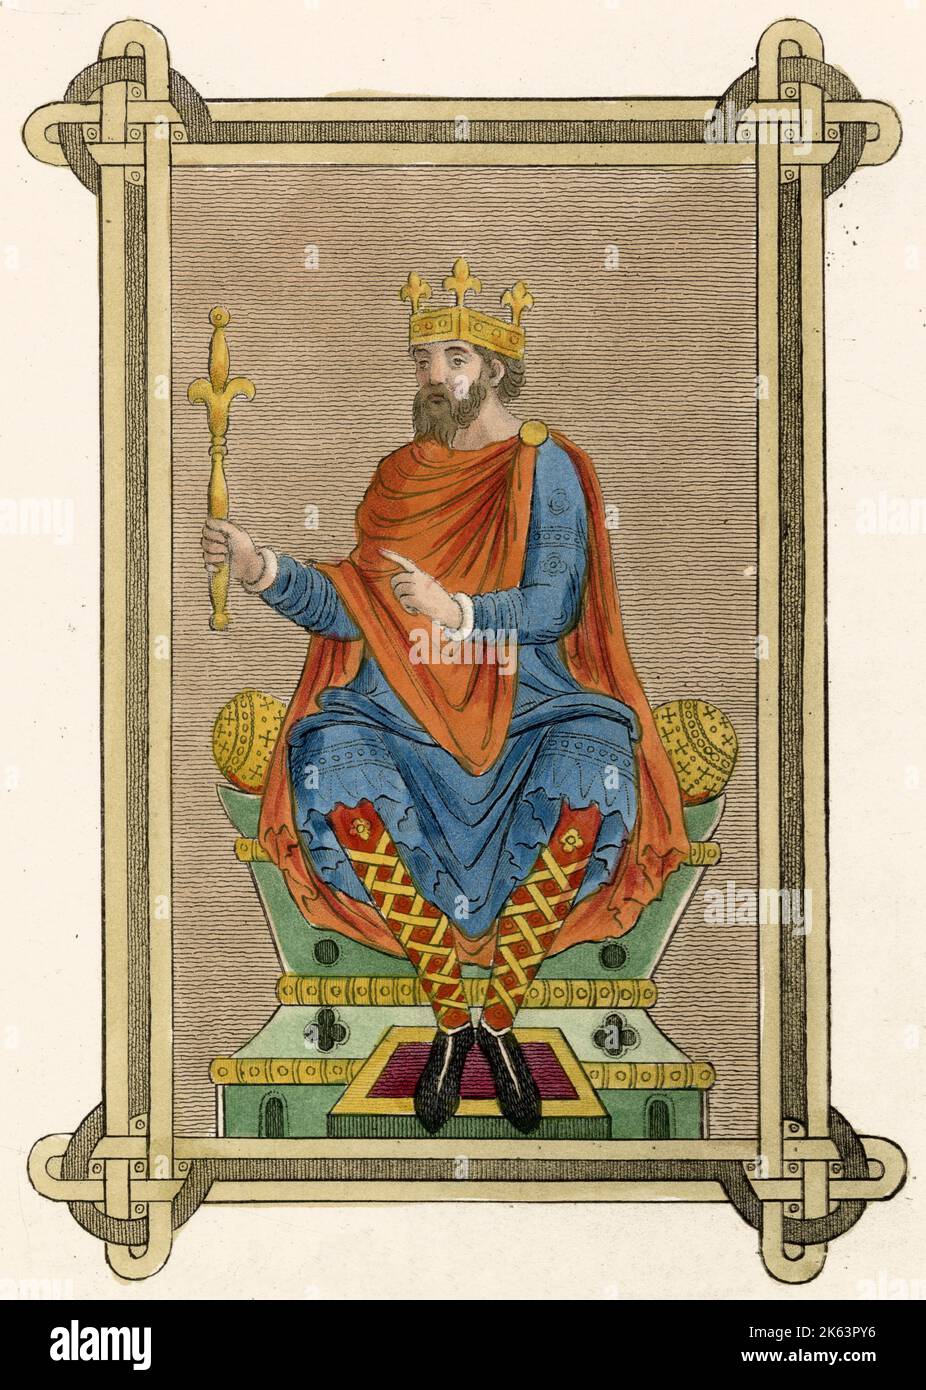 El rey anglosajón en su hábito del estado viste una túnica azul con dobladillo bordado, un manto asegurado con un broche, manguera roja con vendas de pierna de criss-cruz de oro y una corona cuadrada. Fecha: Siglo 9th Foto de stock